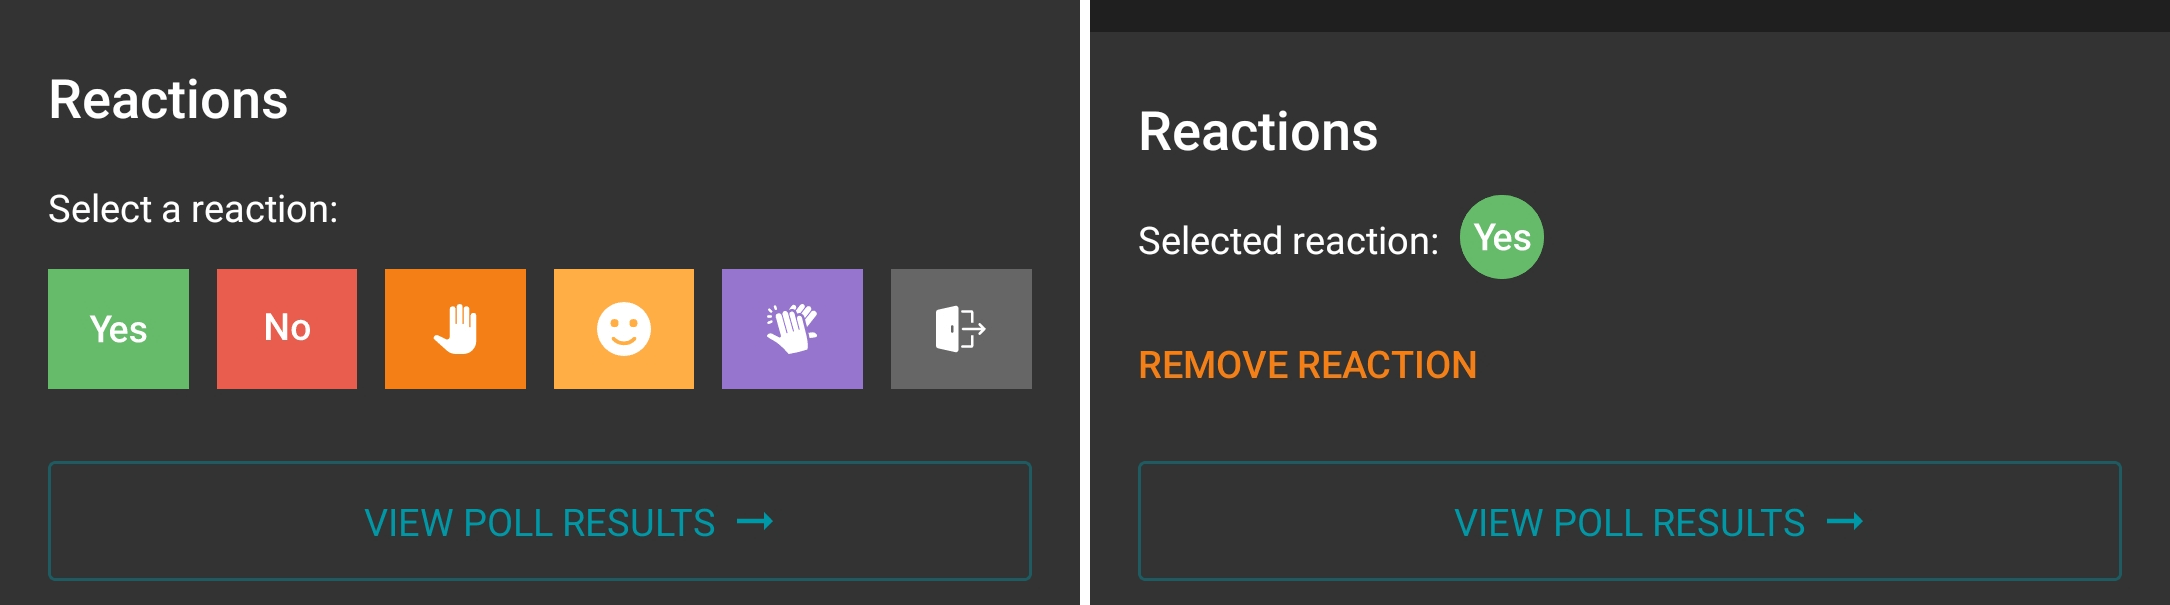 /docs/client-android/media/reactions/en.png